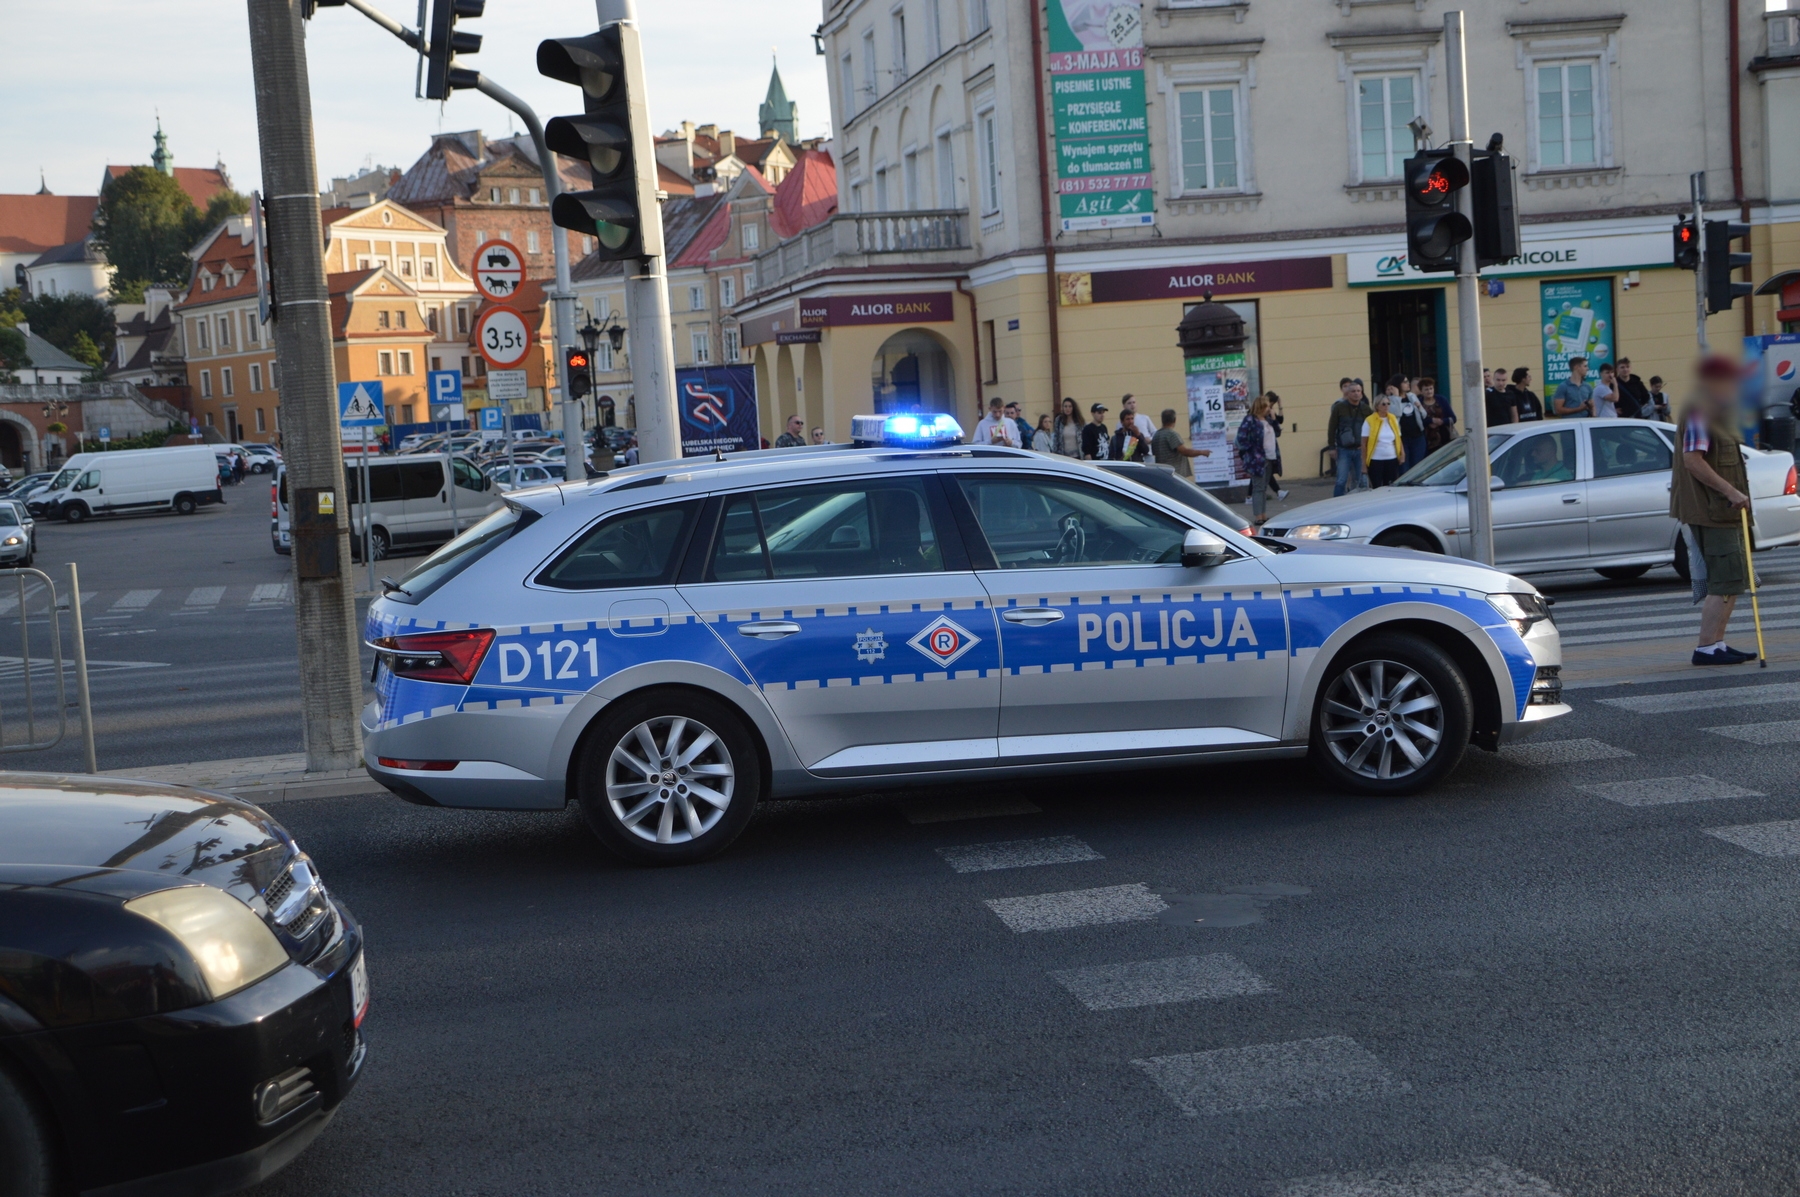 Pościg policji za volkswagenem. Kierujący uciekał pod prąd, na koniec skopał radiowóz (zdjęcia, wideo)